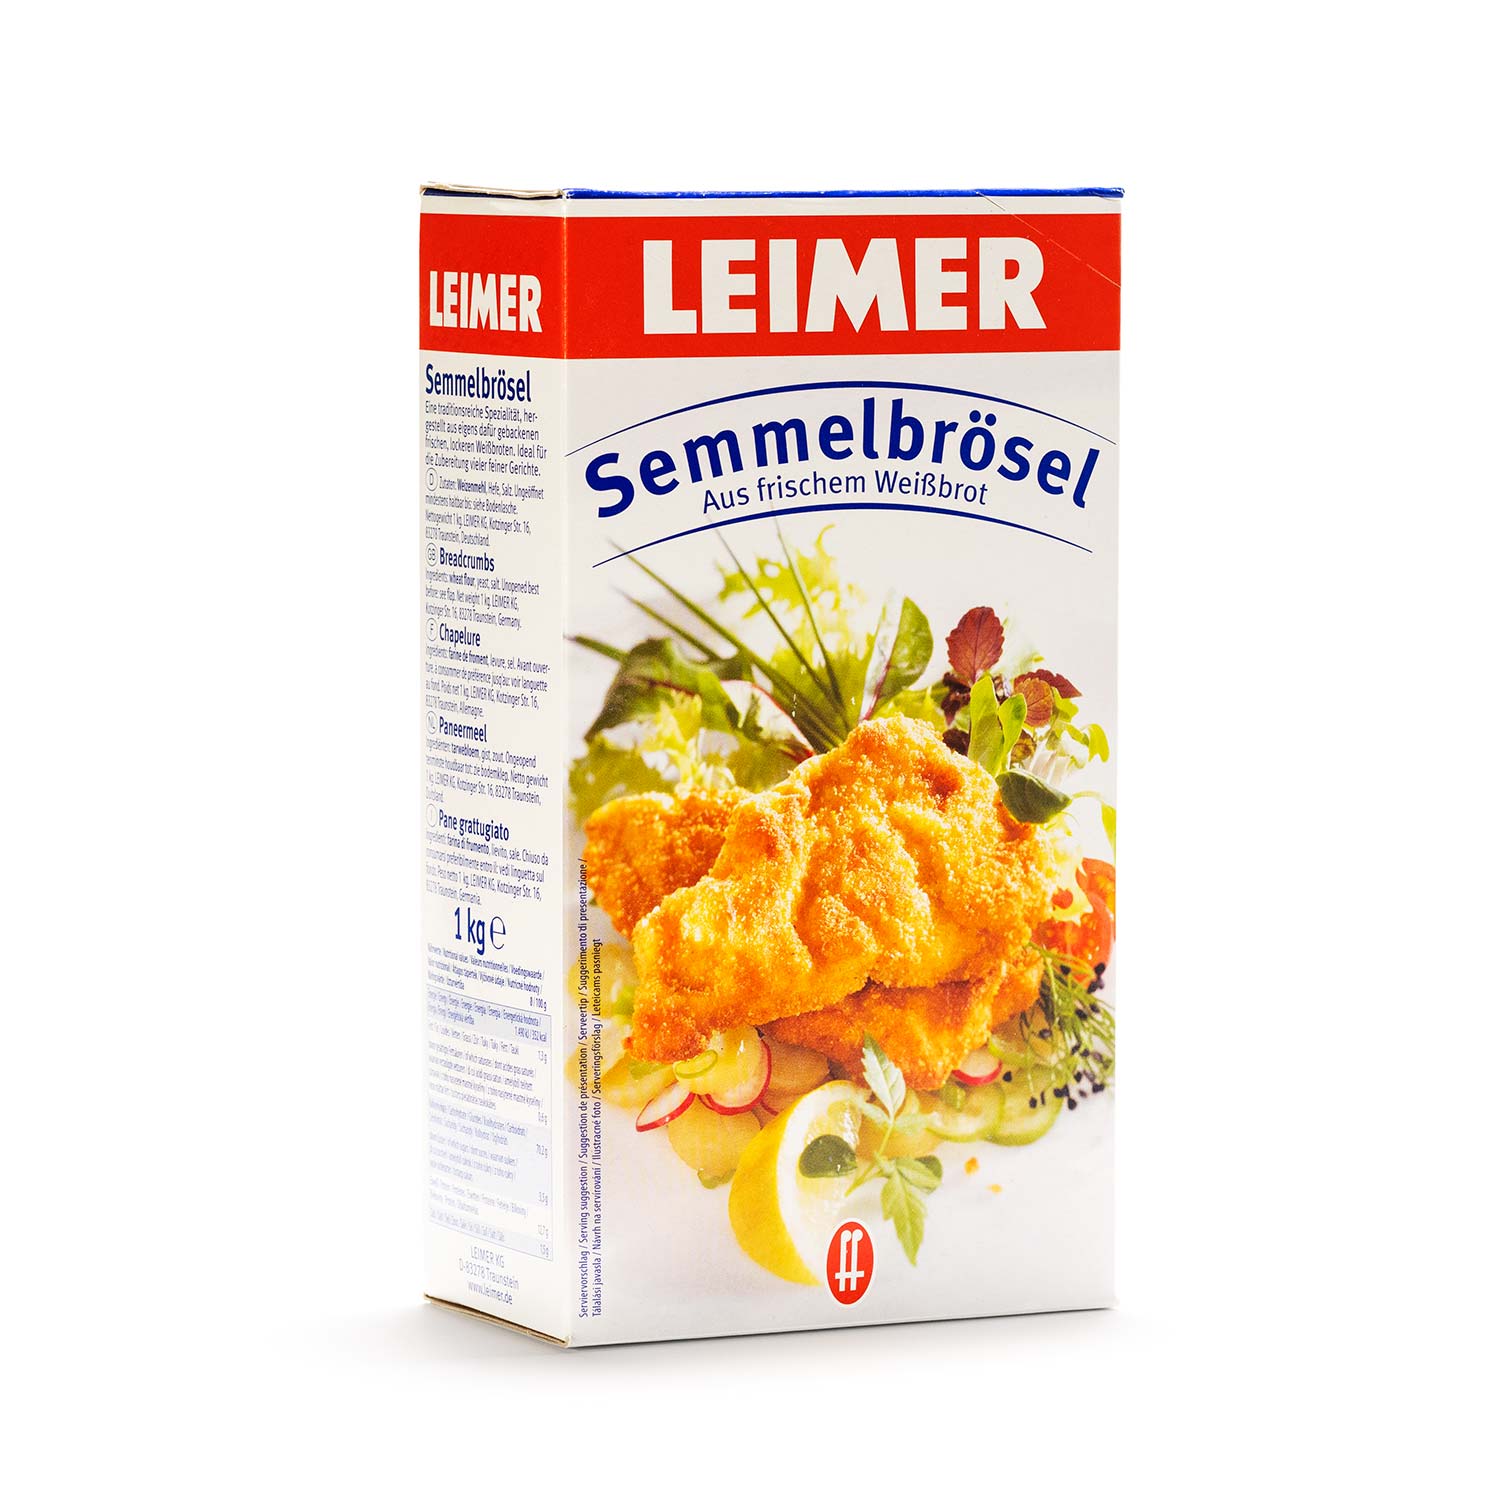 Leimer Semmel Broesel 1KG - Bread Crumbs